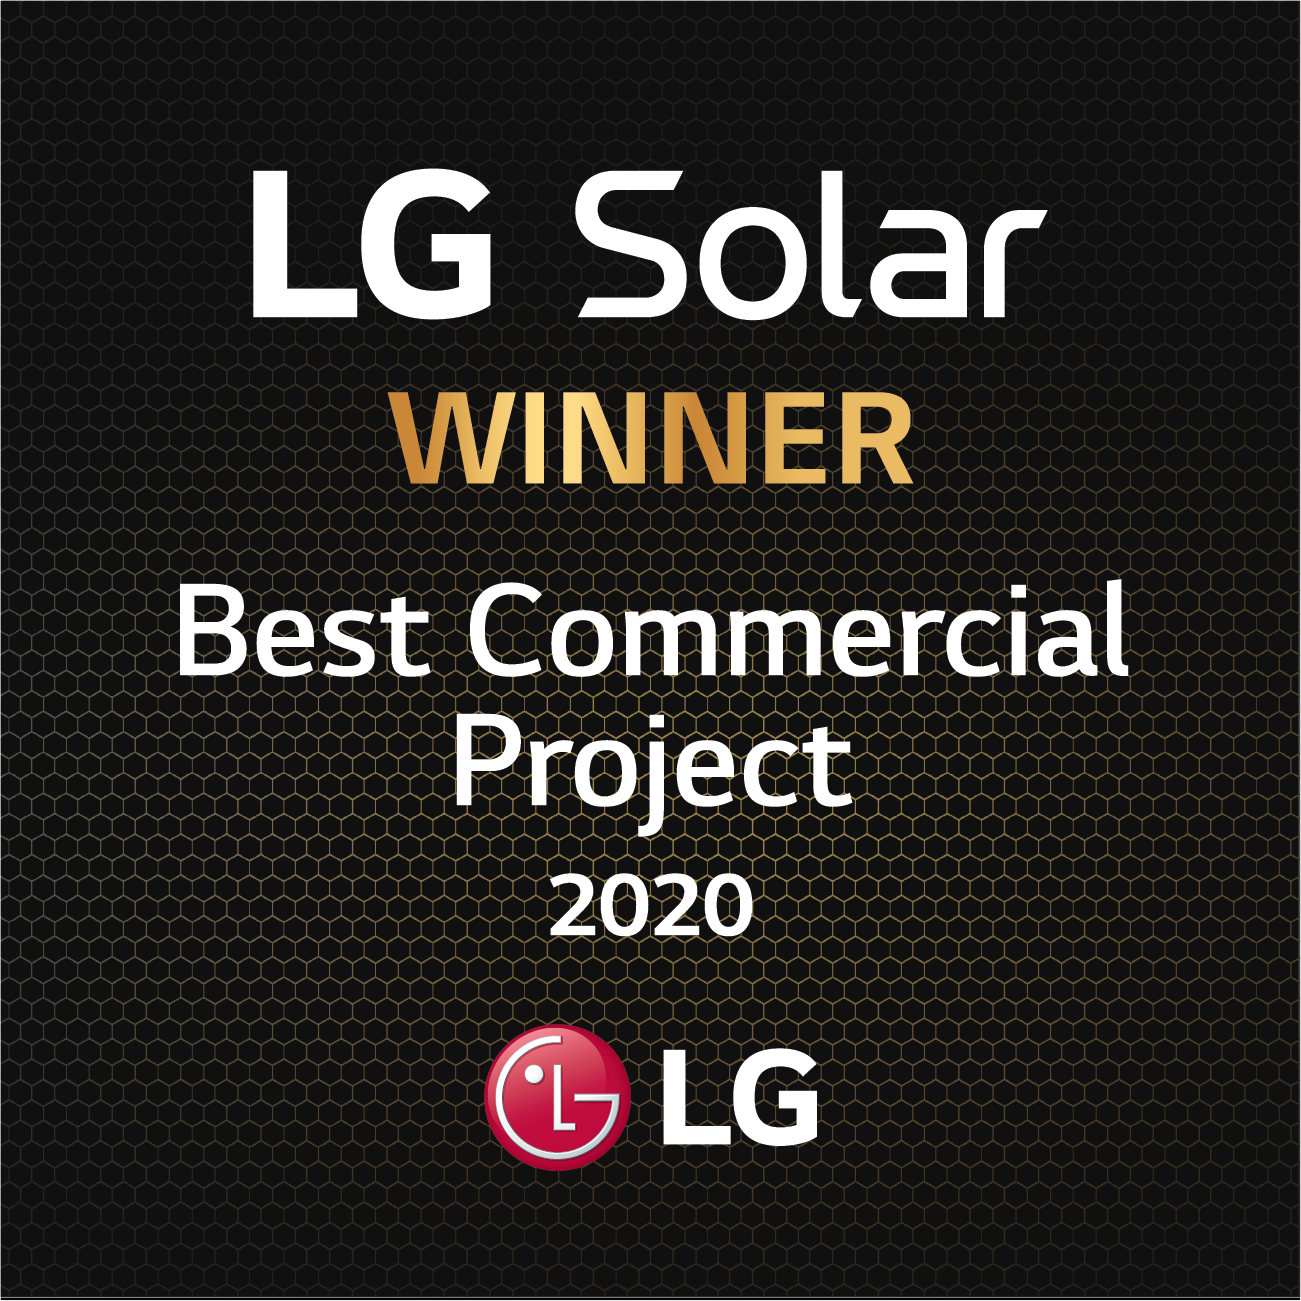 LG Solar Dealer Awards_WINNER Best Commercial Project 2020